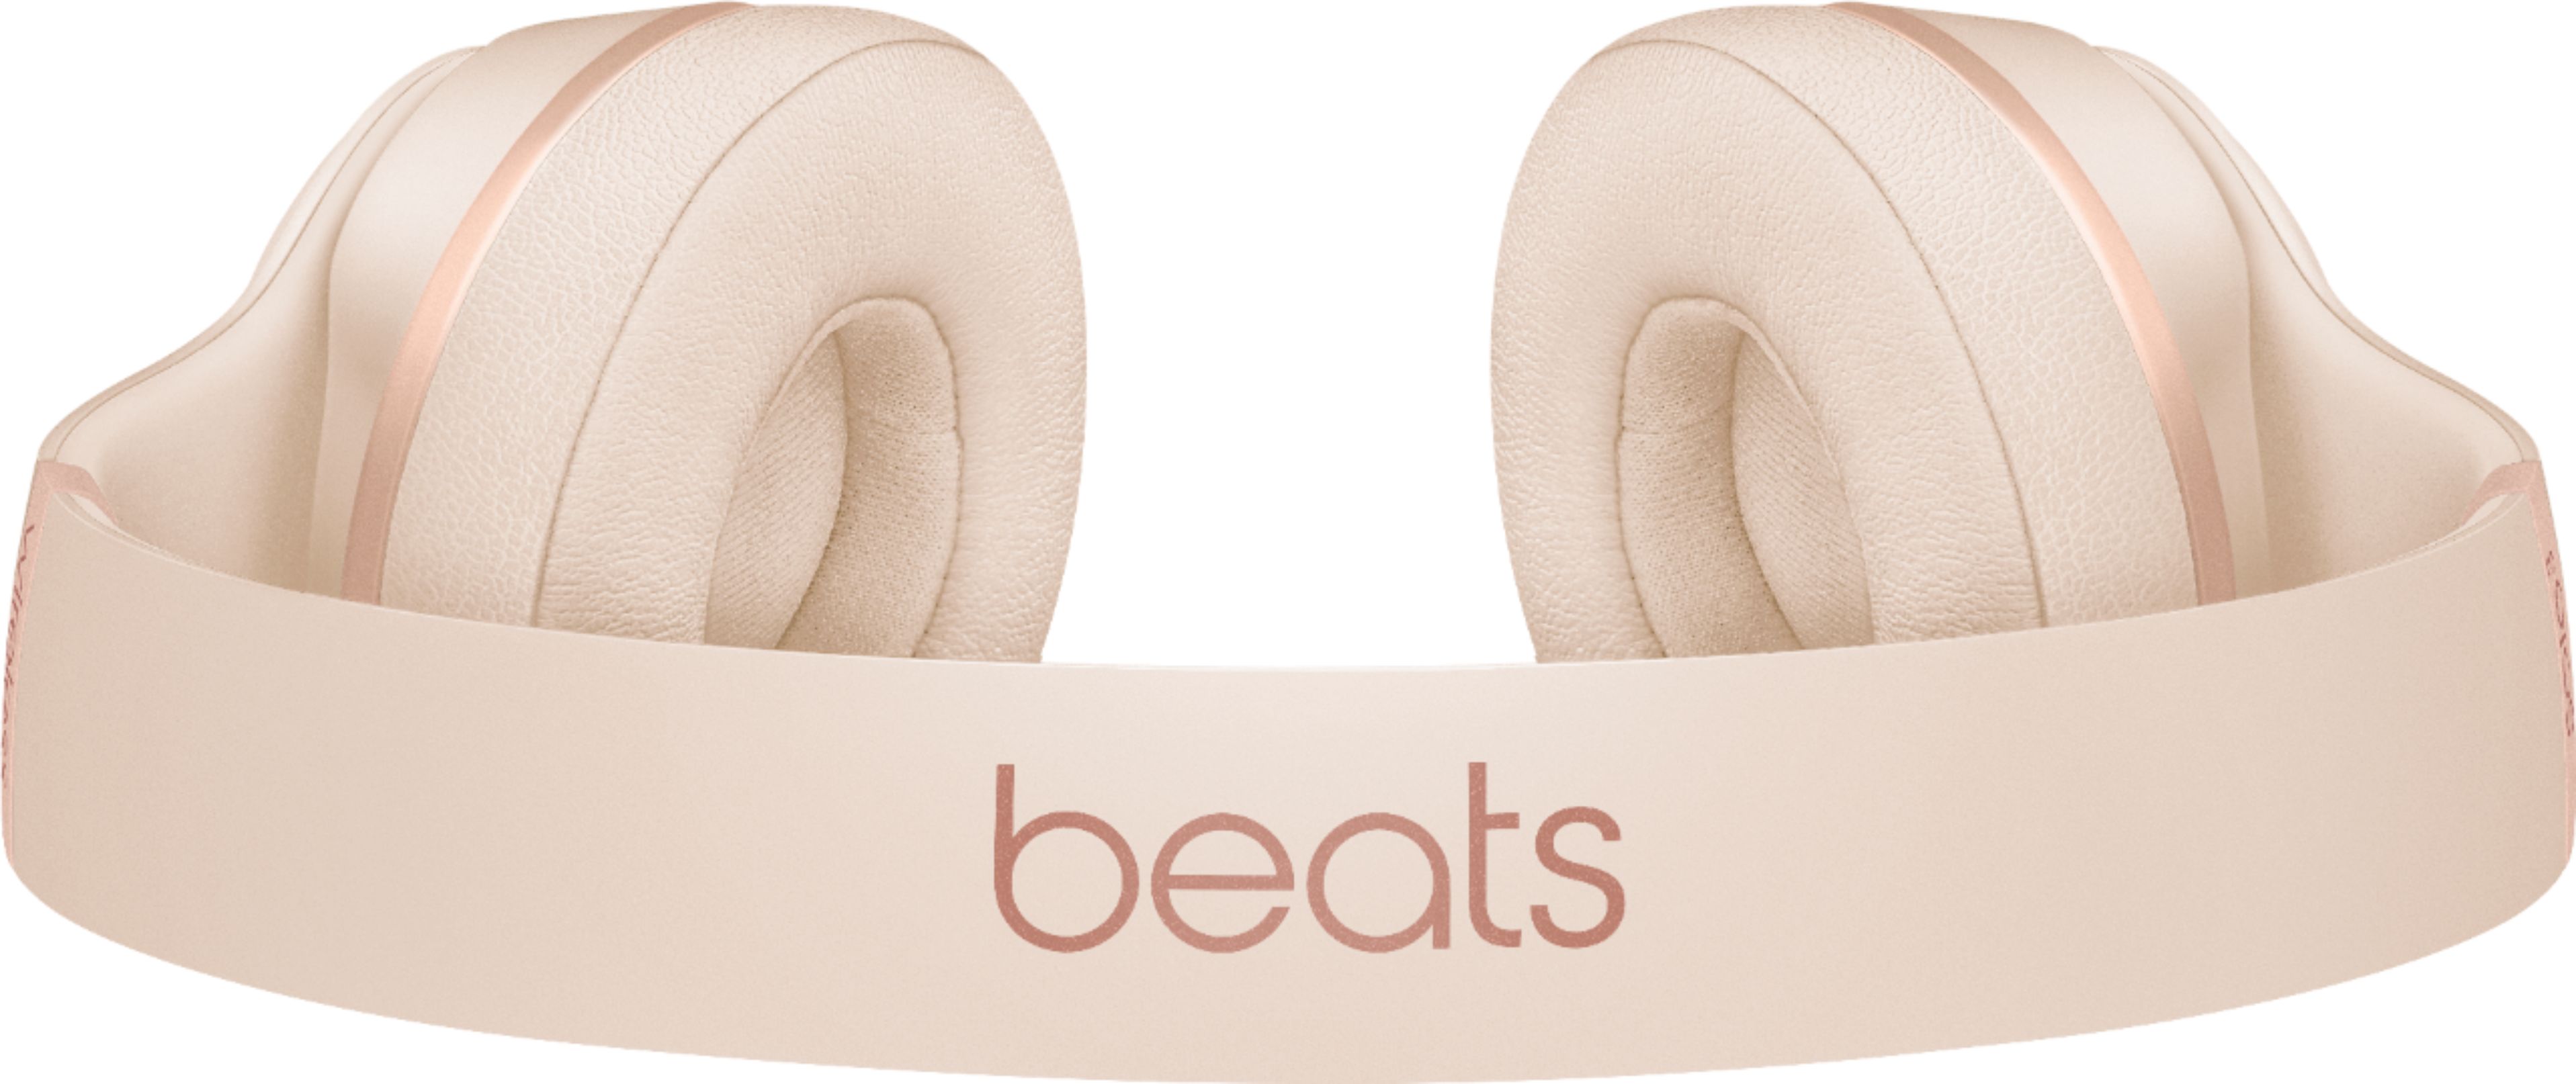 オーディオ機器 ヘッドフォン Best Buy: Beats by Dr. Dre Beats Solo³ Wireless Headphones Matte 